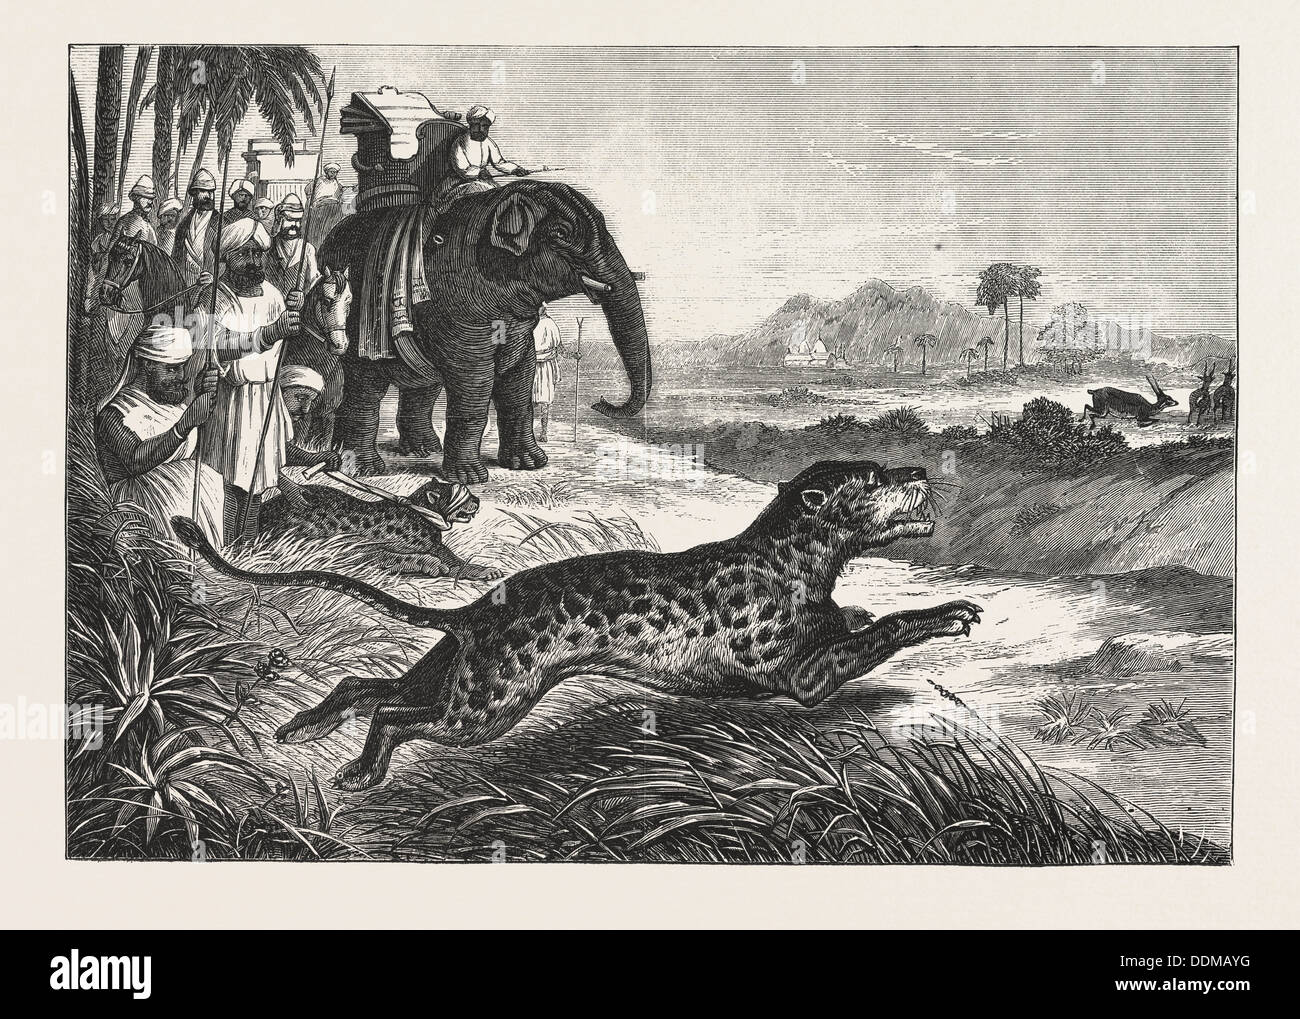 SPORT IN INDIEN, JAGEN ANTILOPEN MIT DER GEPARD, GRAVUR 1876. Antilope, Wildkatze, Raubkatze, Tier Stockfoto